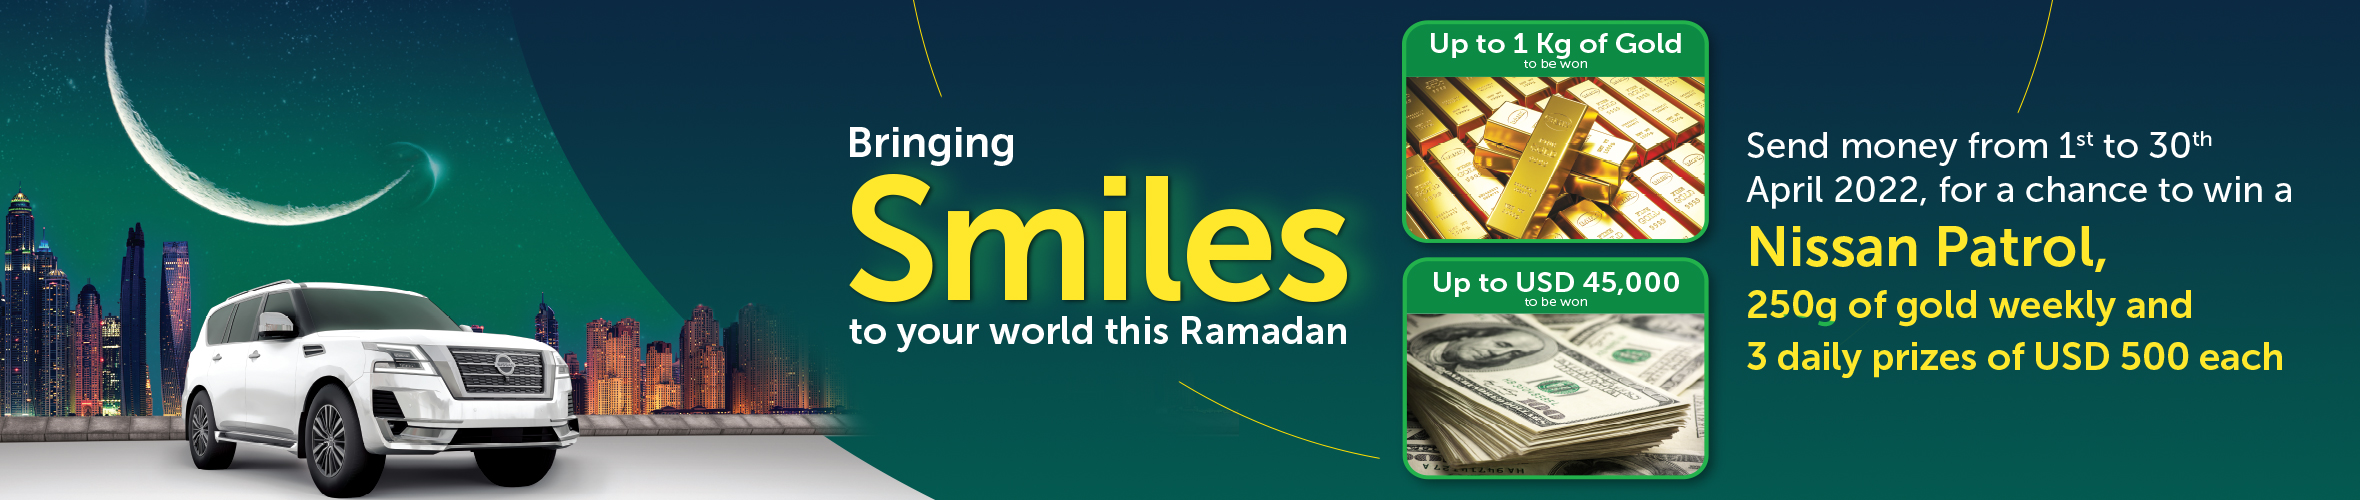 Ramadan Kareem - Spreading Smiles this Ramadan!